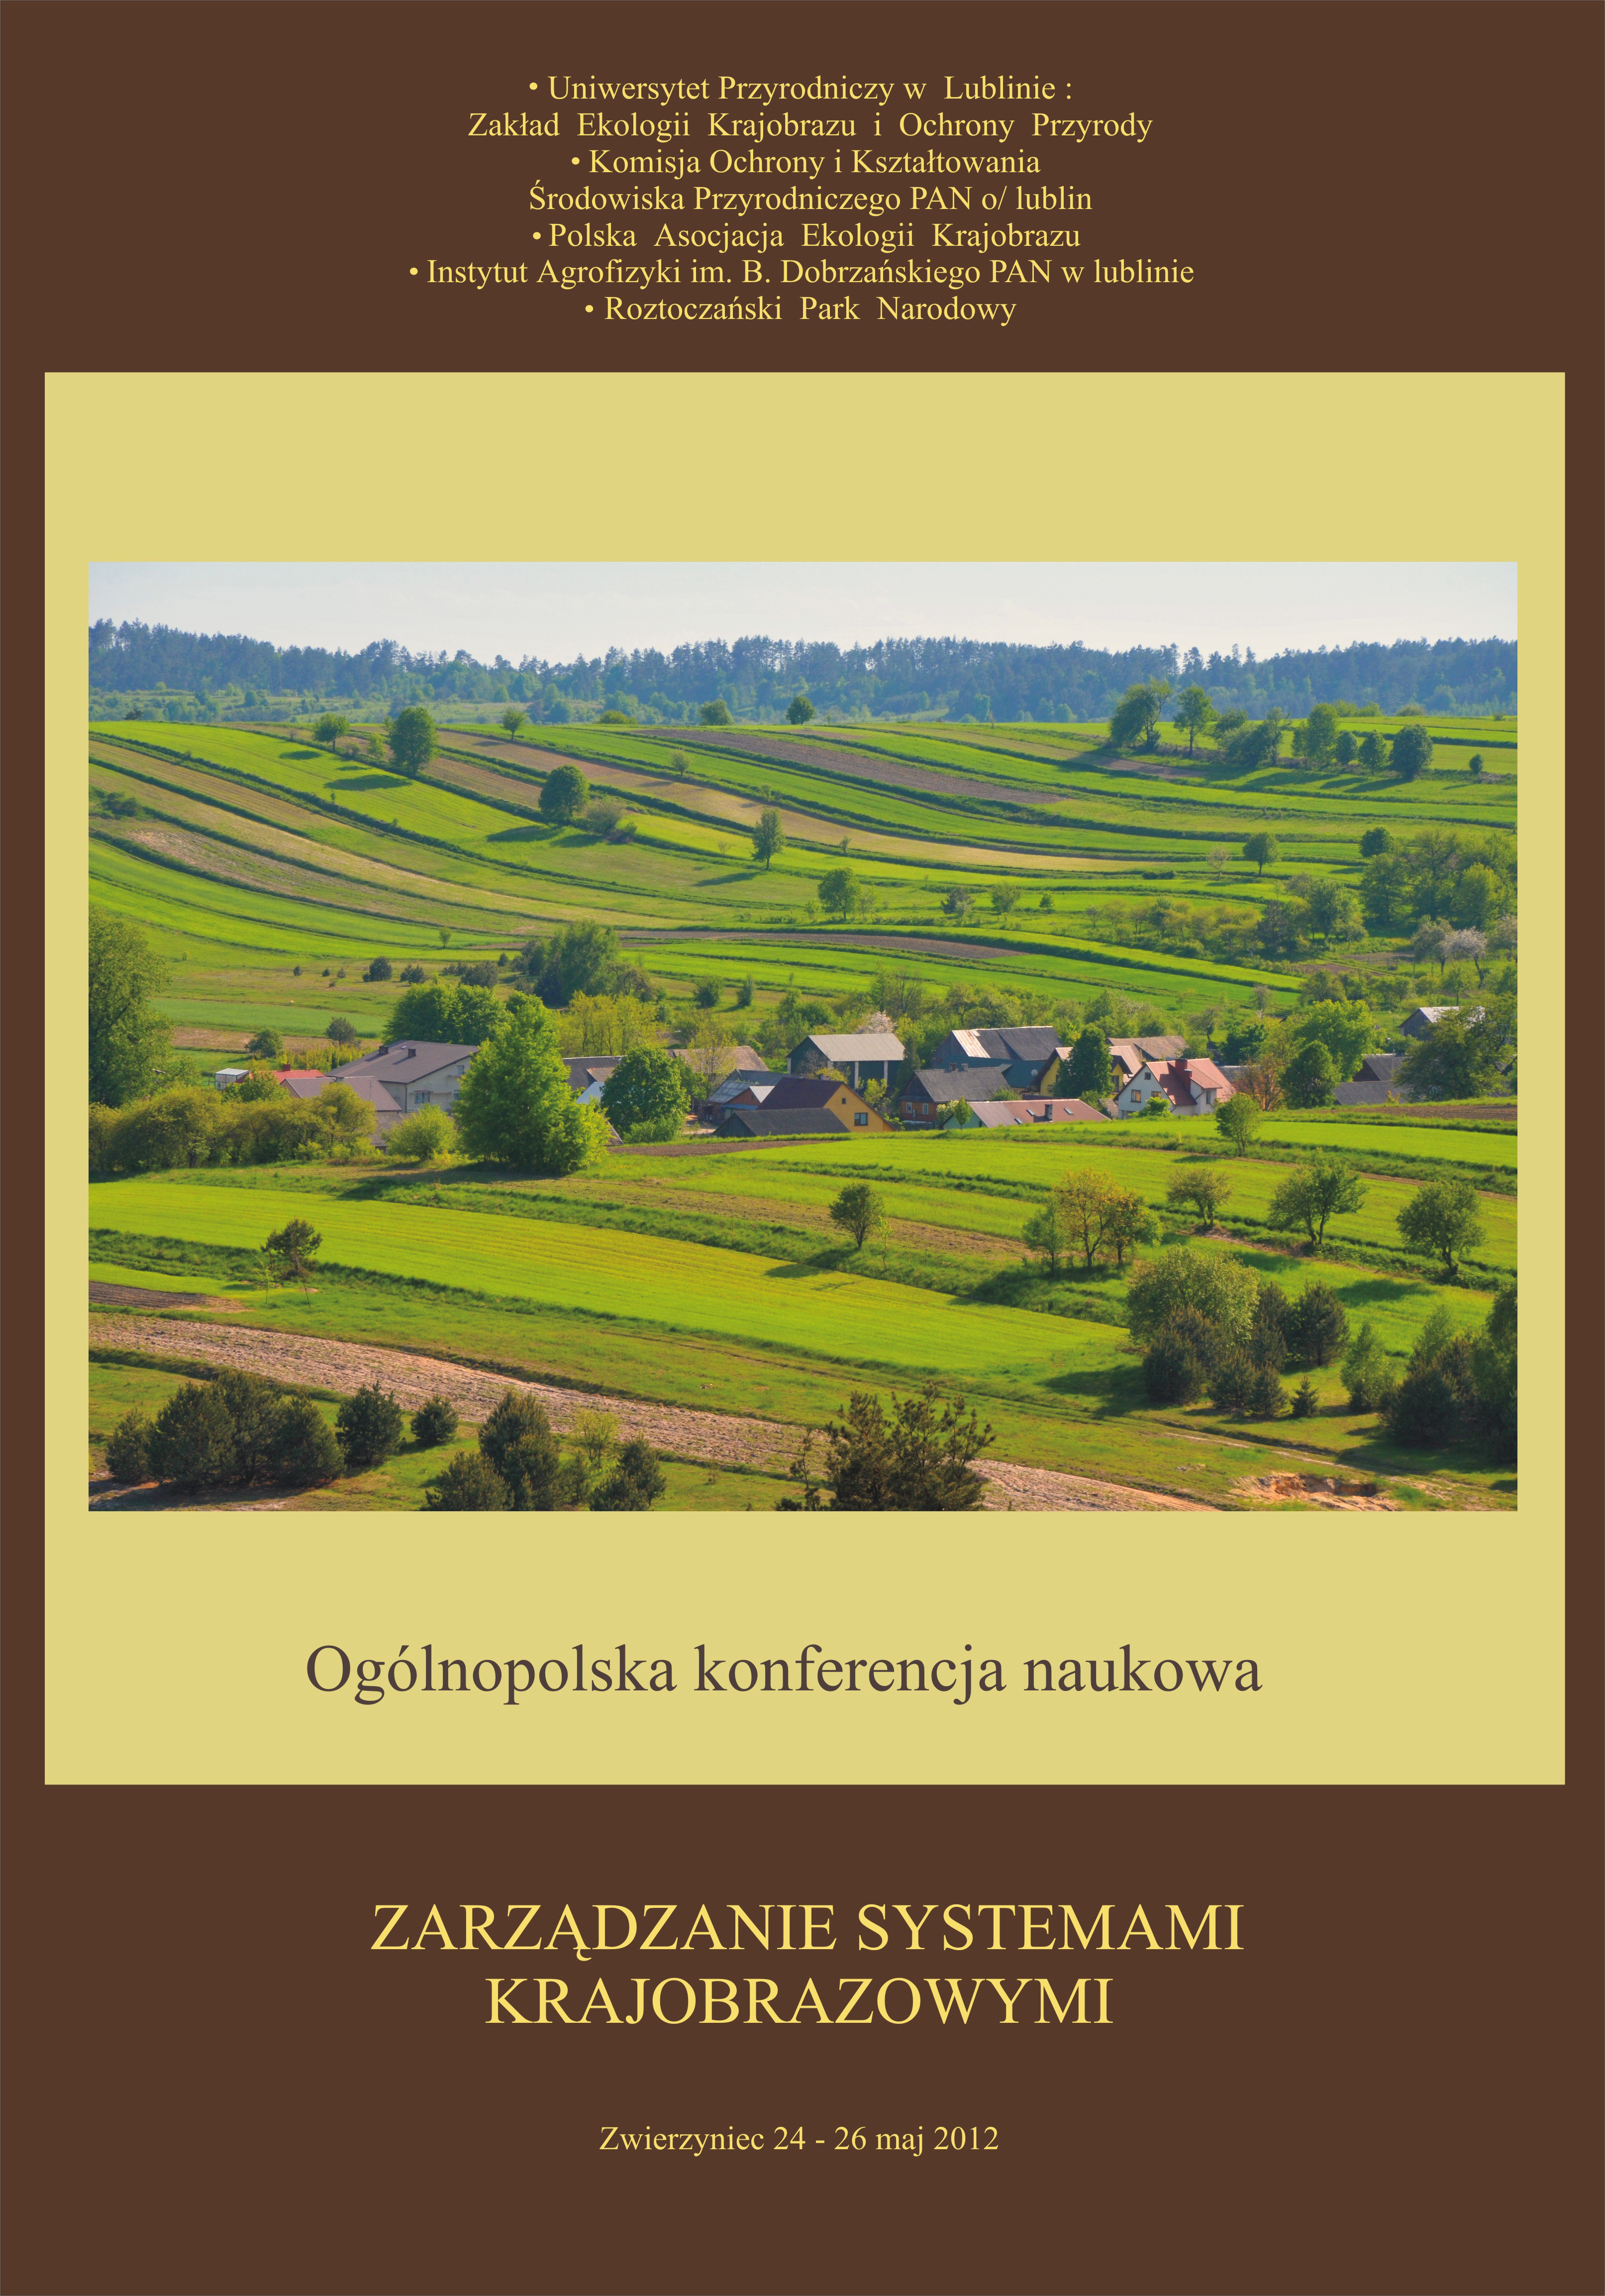 Konferencja naukowa "Zarządzanie systemami krajobrazowymi"